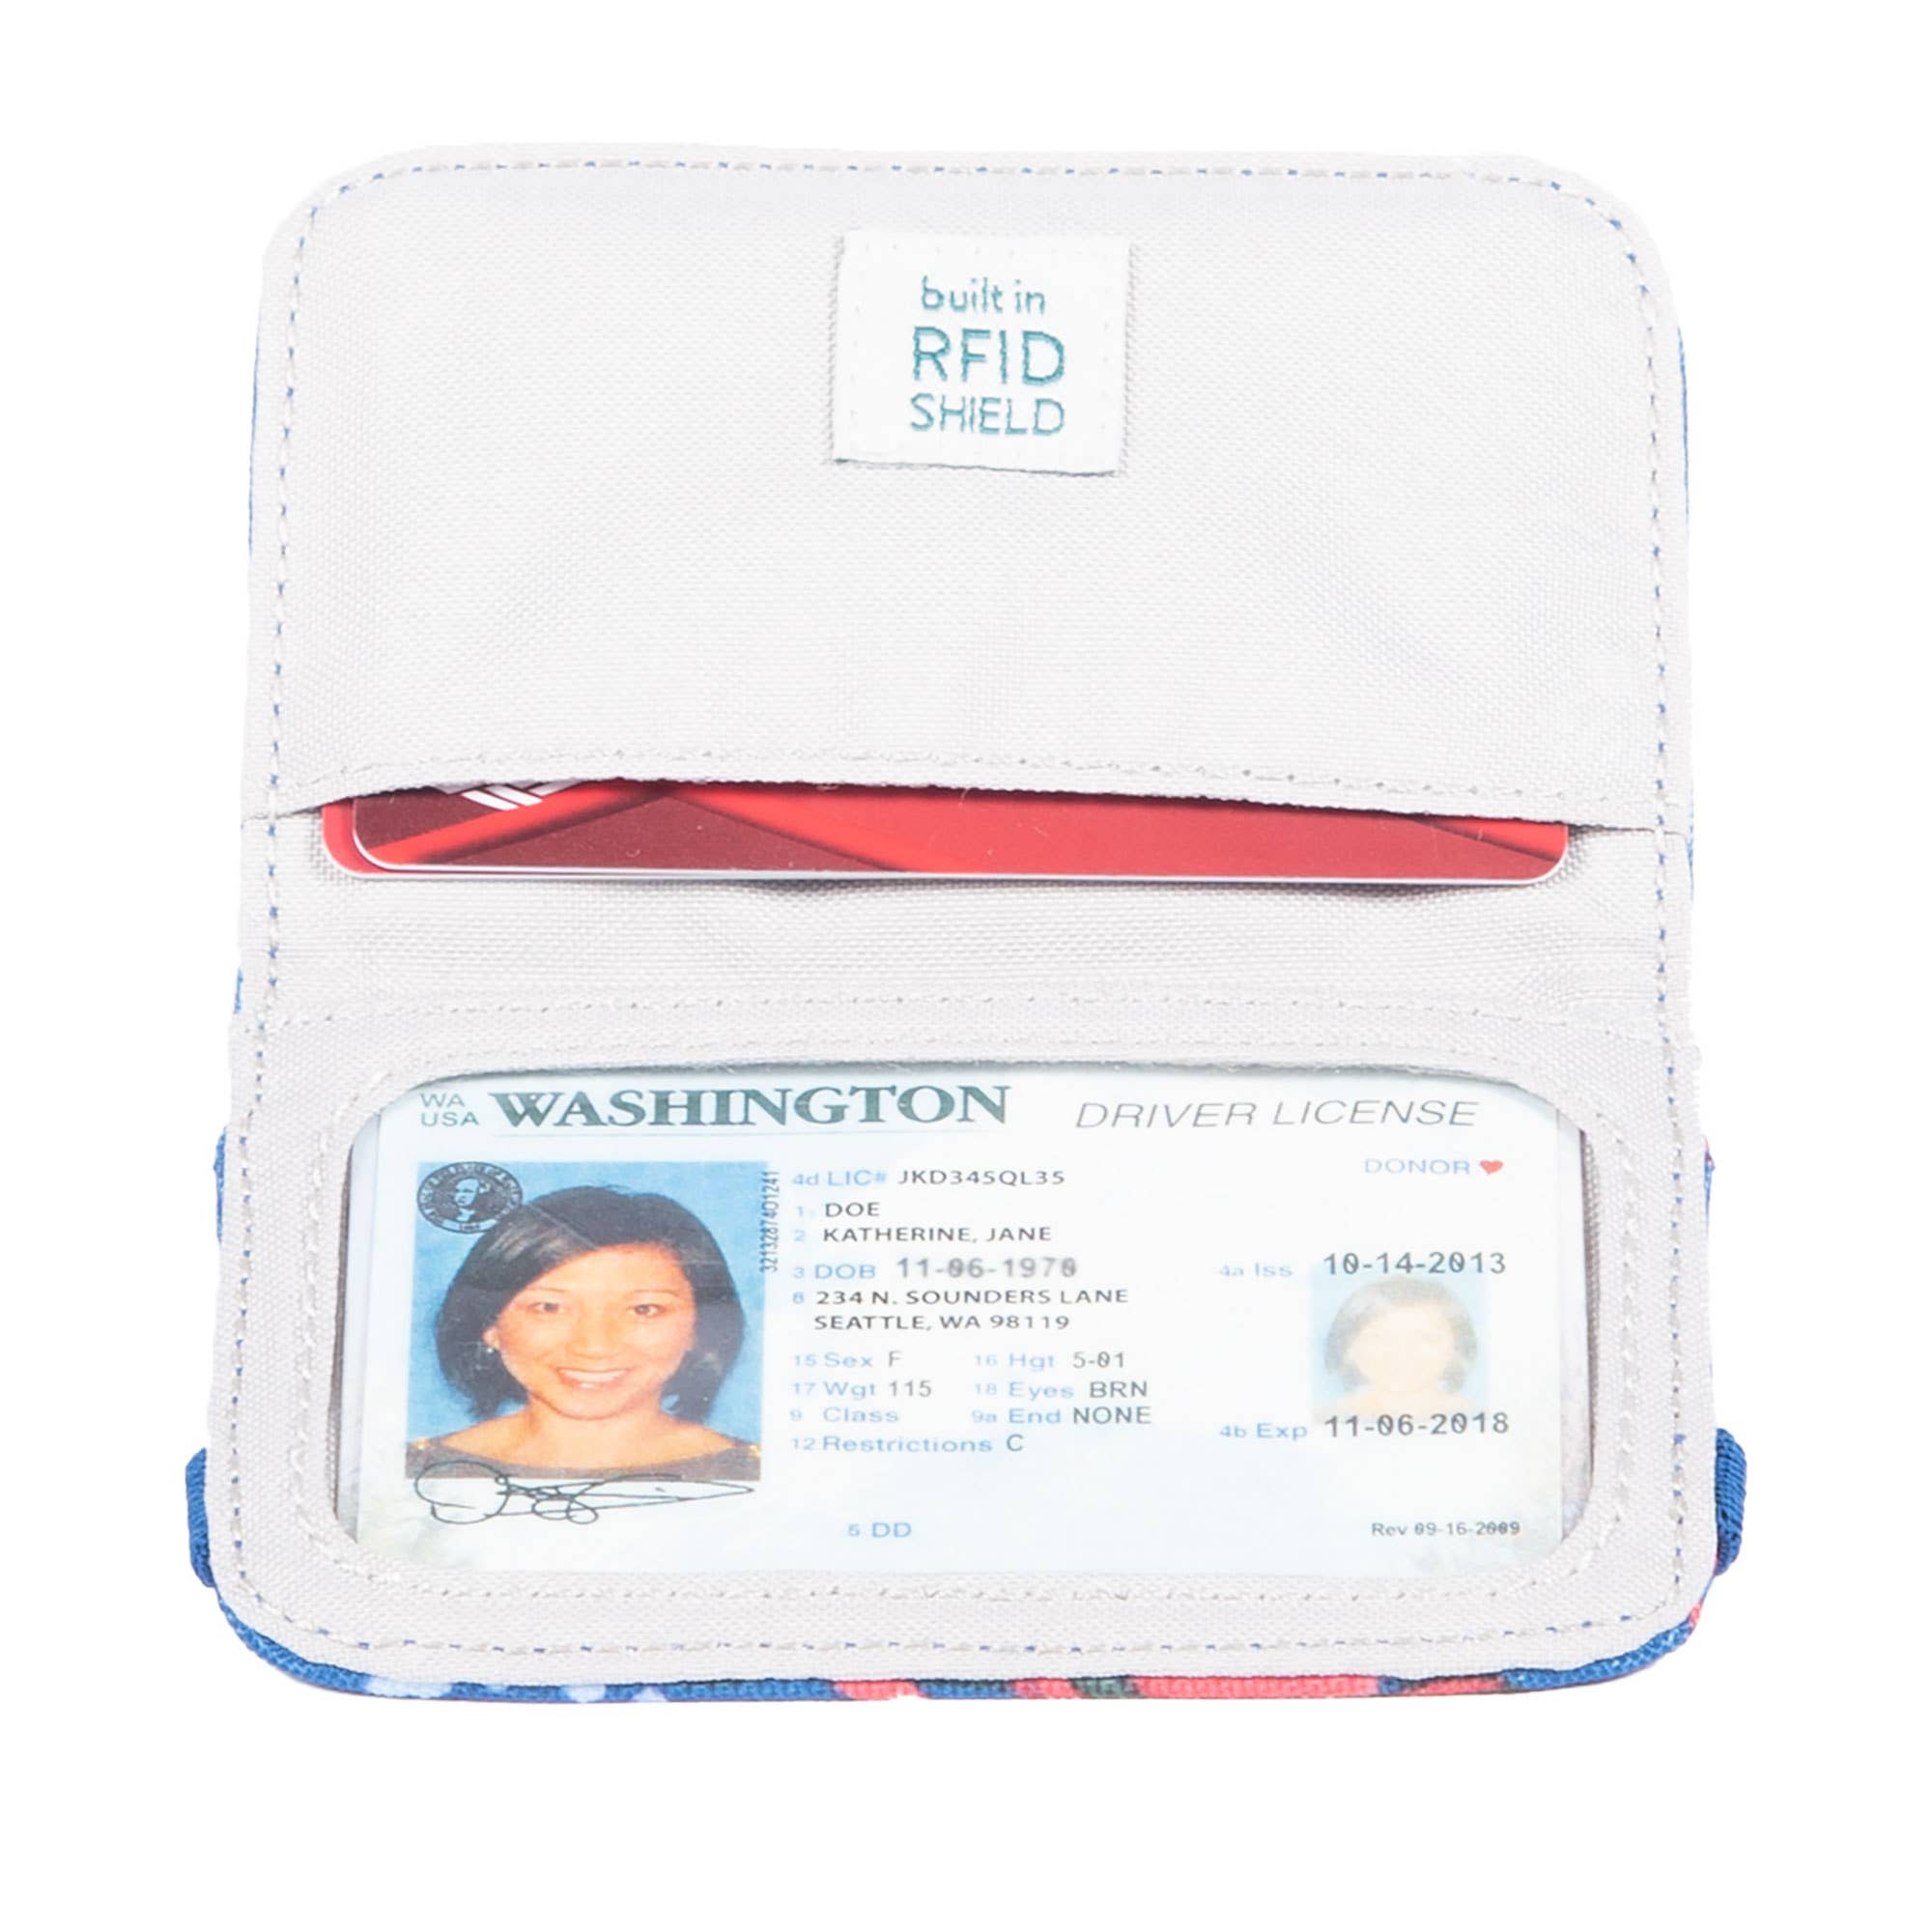 RFID Mini Wallet 2.0: Black